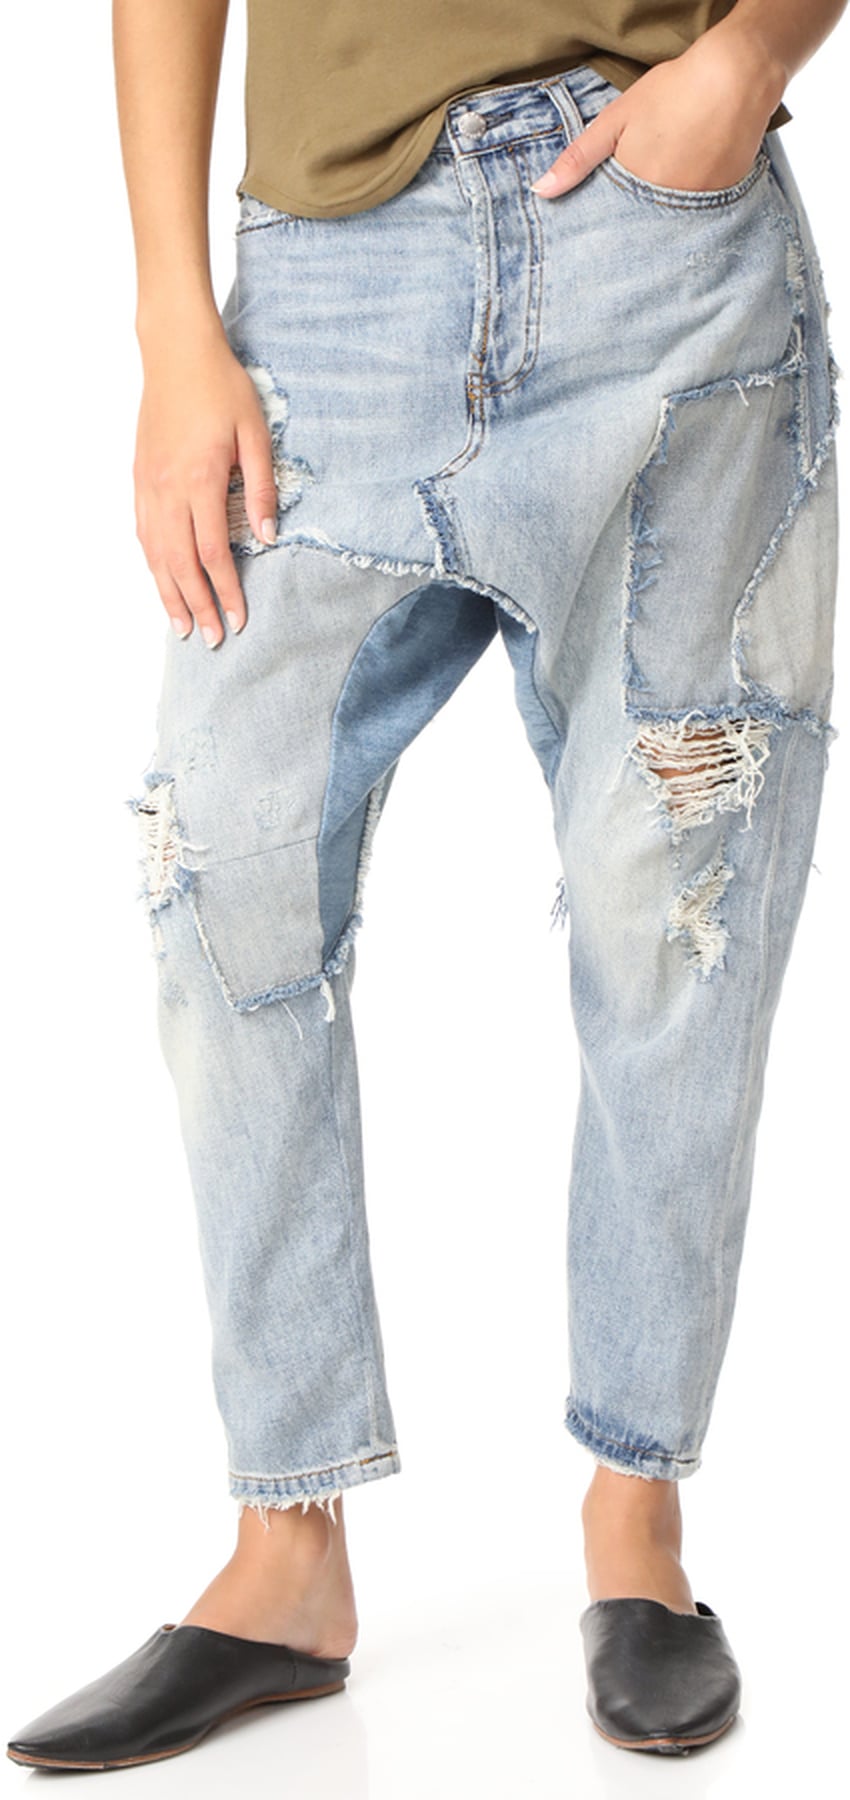 Beyonce Wearing Baggy Jeans | POPSUGAR Fashion